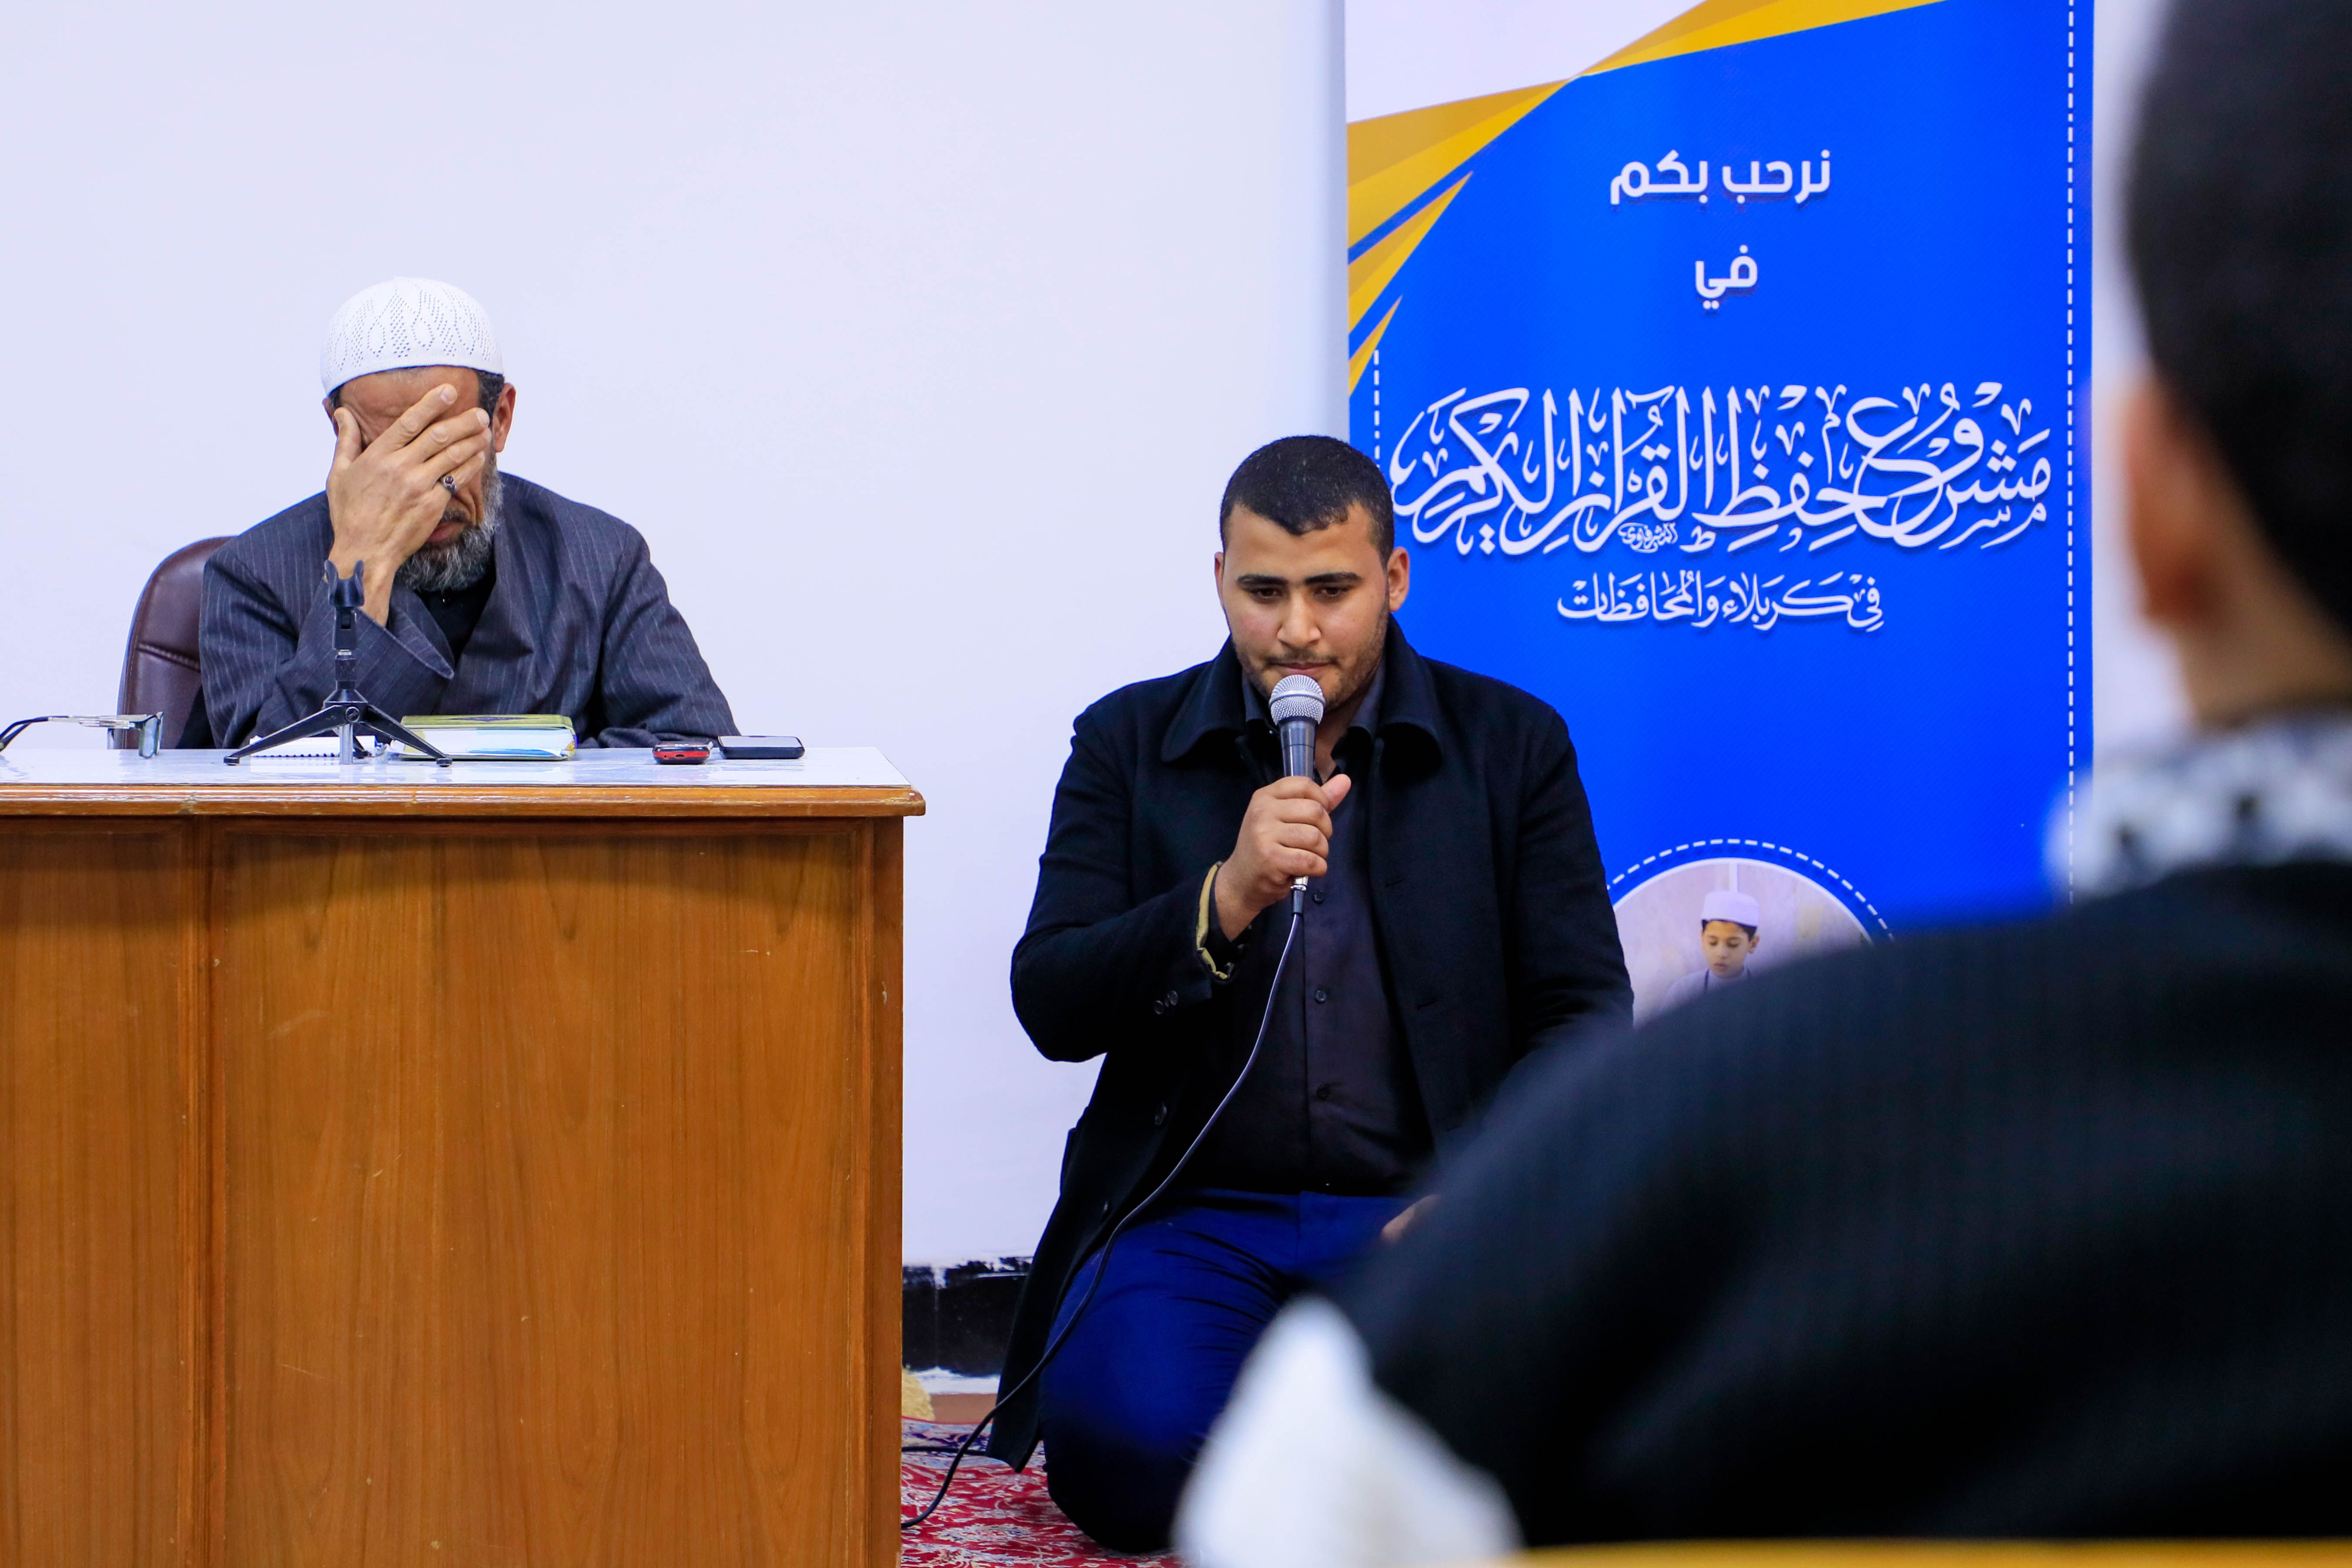 معهد القرآن الكريم يقيم مجلس عزاء بذكرى استشهاد الإمام موسى الكاظم (عليه السلام)